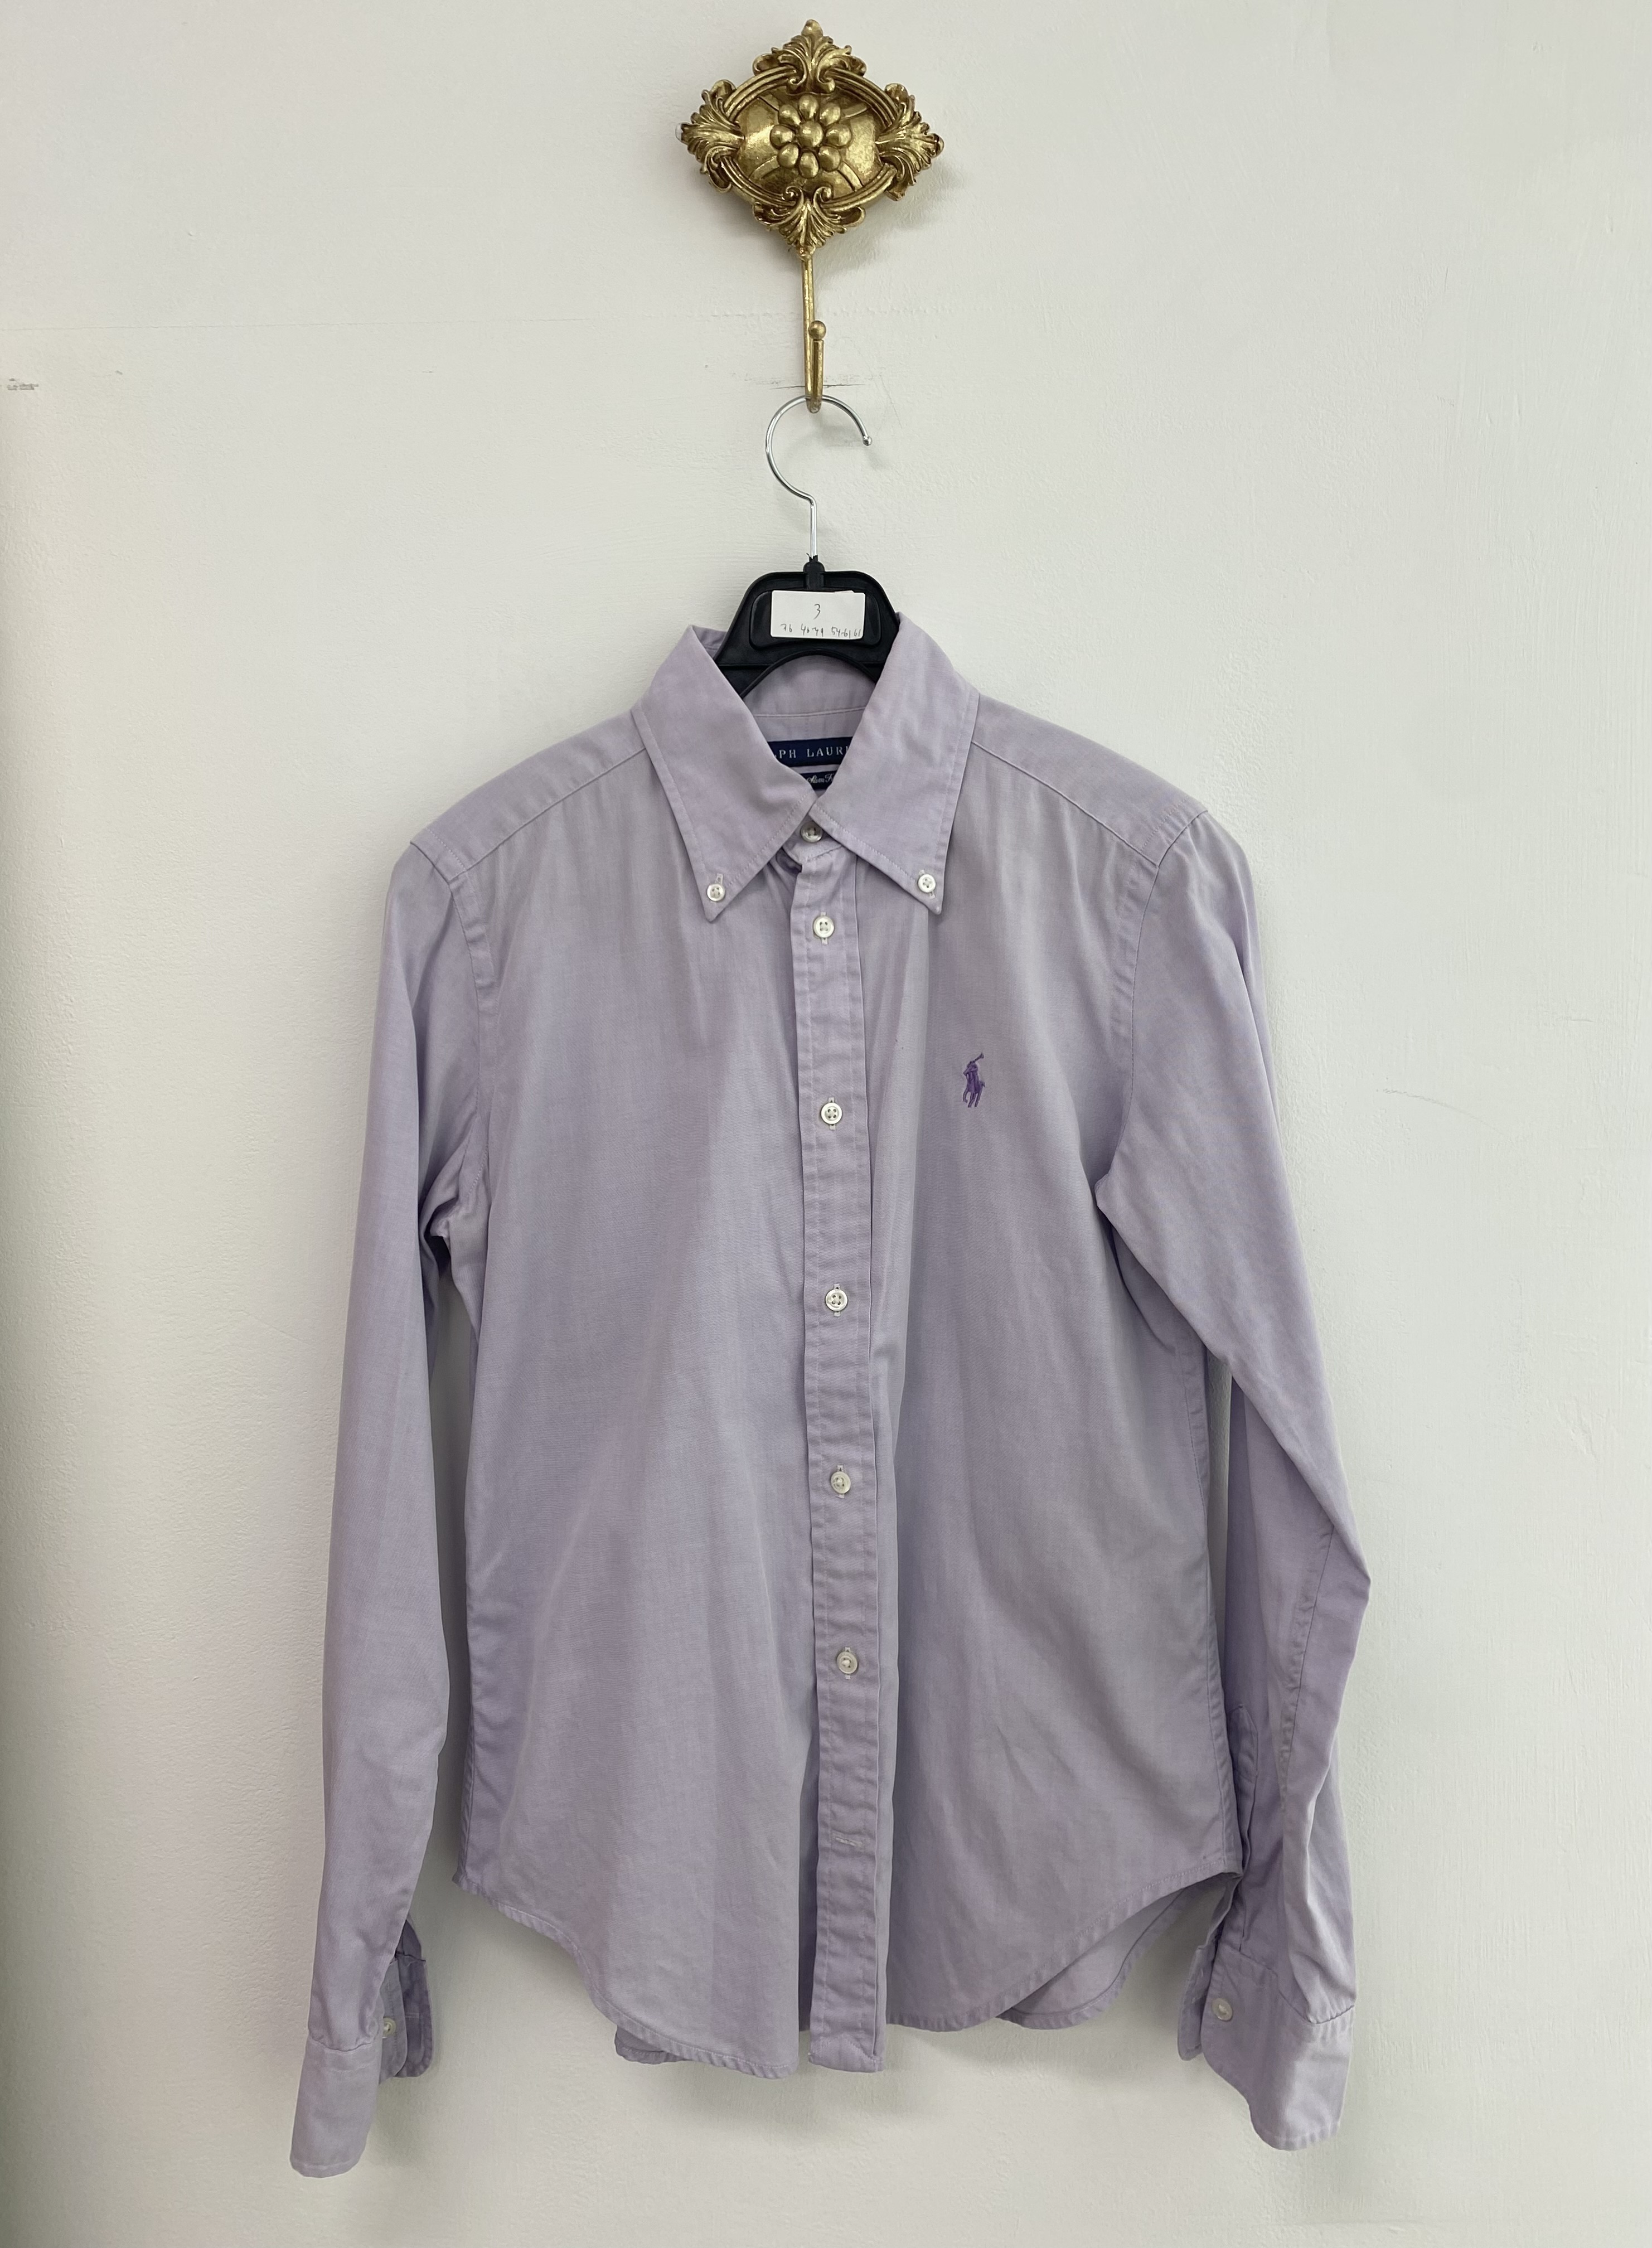 Ralph Lauren light purple cotton shirt